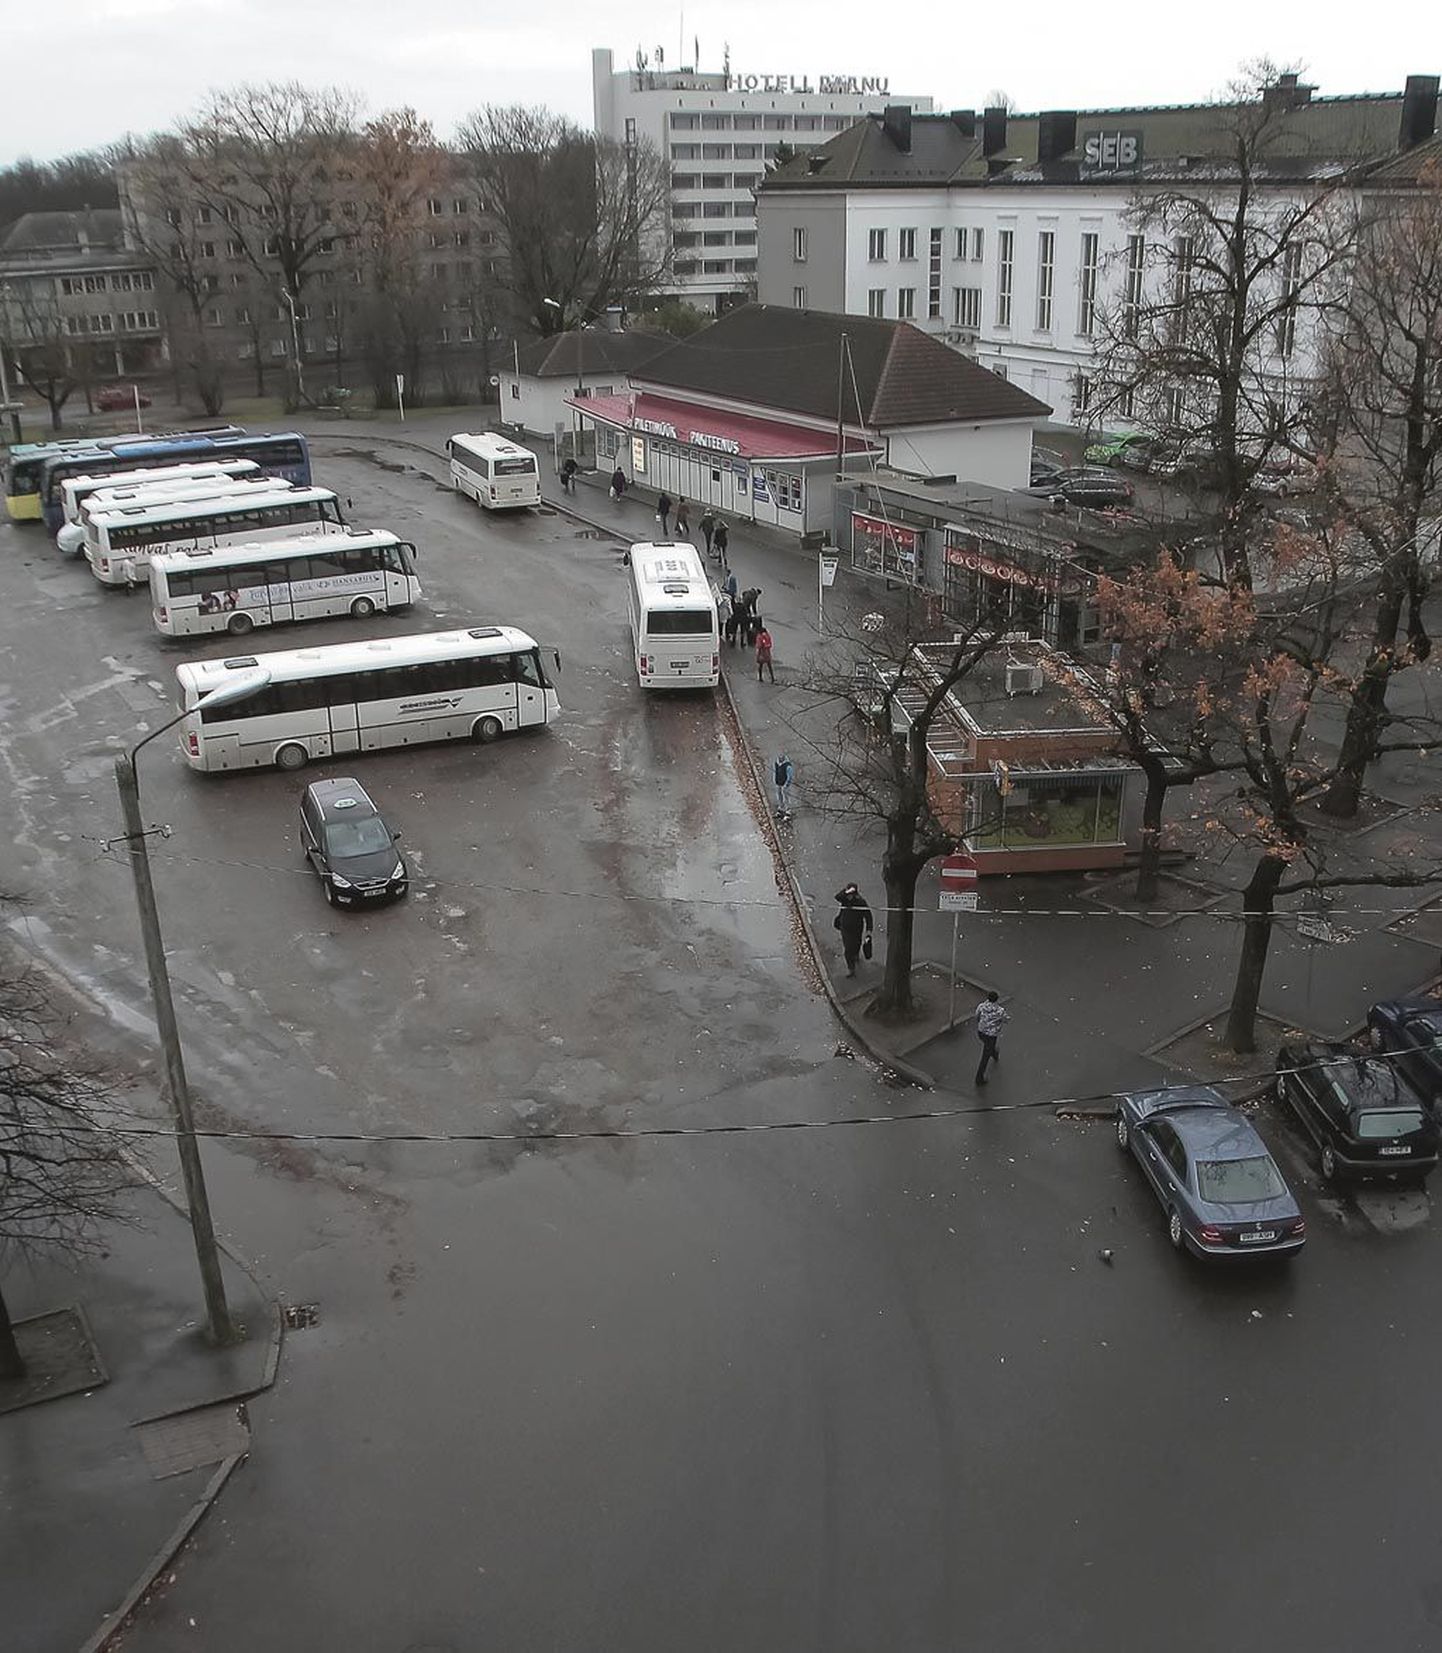 Kiirustades või venitades, aga Pärnu saab uue bussijaamahoone, kust saab nii pileteid kui jäätist.